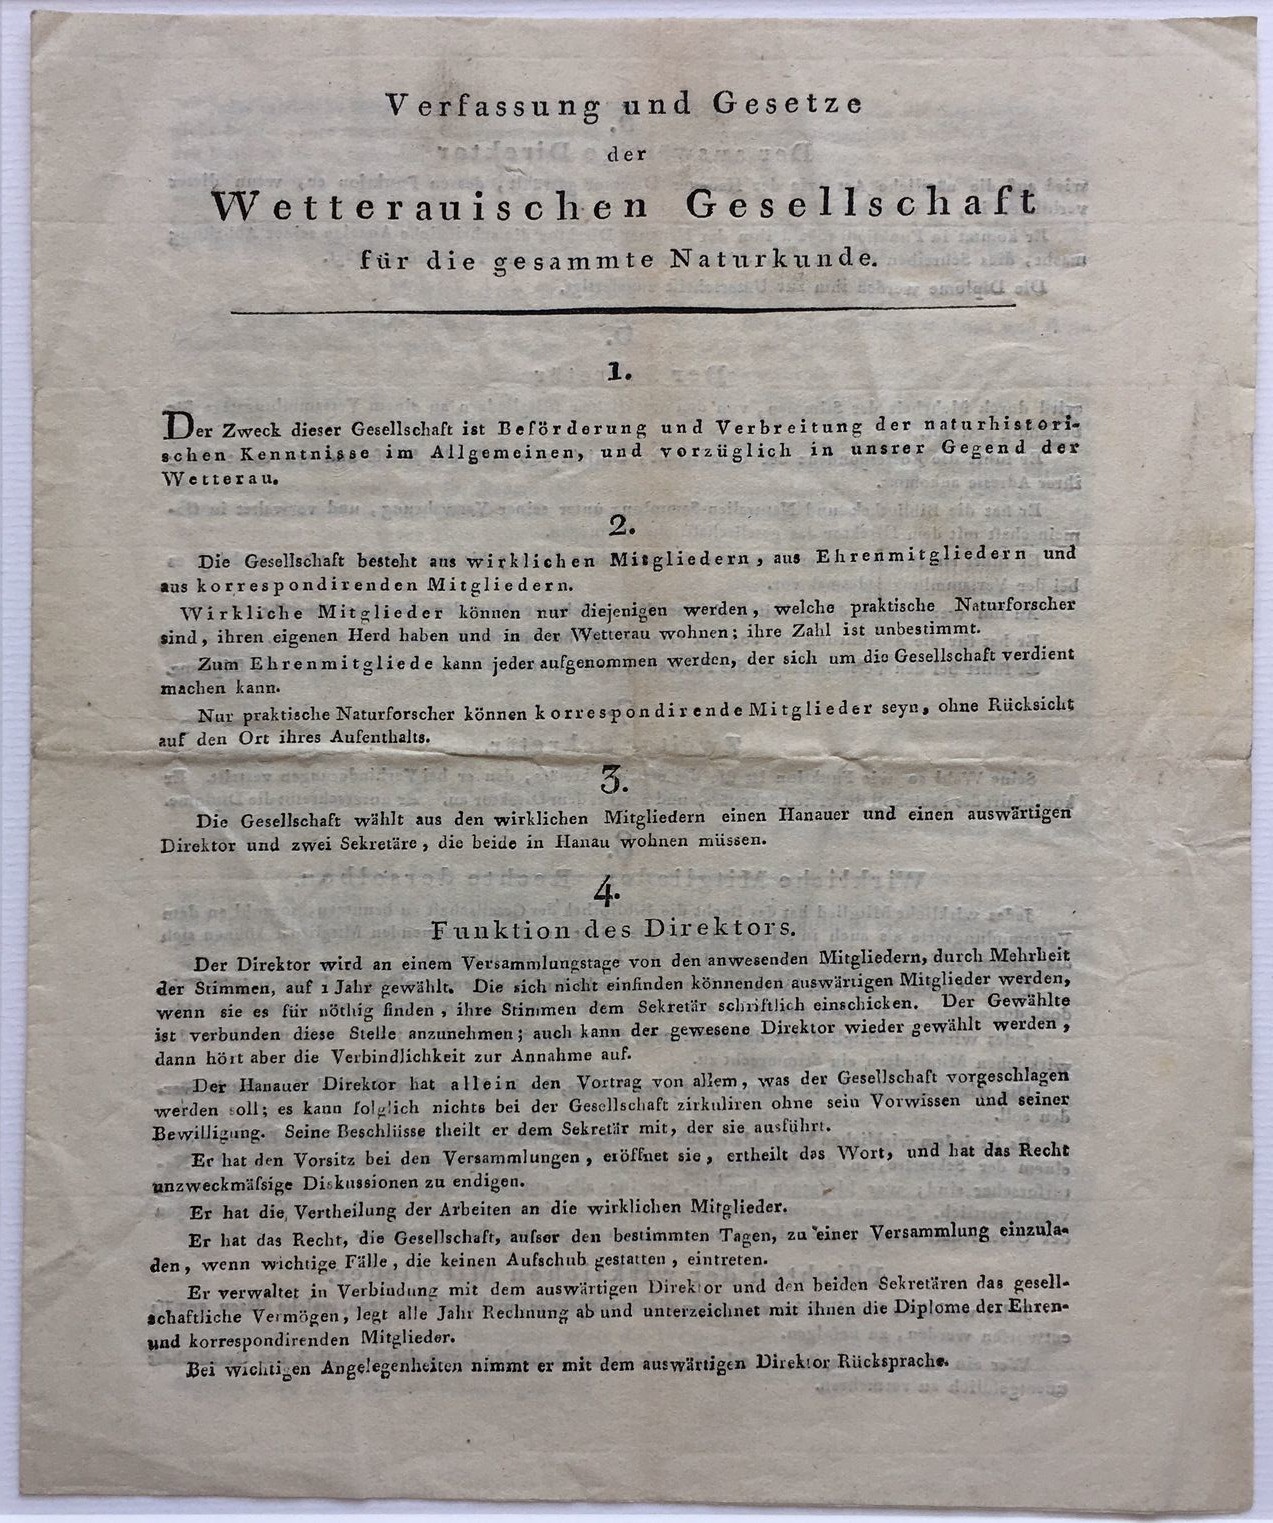 Wetterauische Gesellschaft, Verfassung und Gesetze, August 1808. (Taunus-Rhein-Main - Regionalgeschichtliche Sammlung Dr. Stefan Naas CC BY-NC-SA)